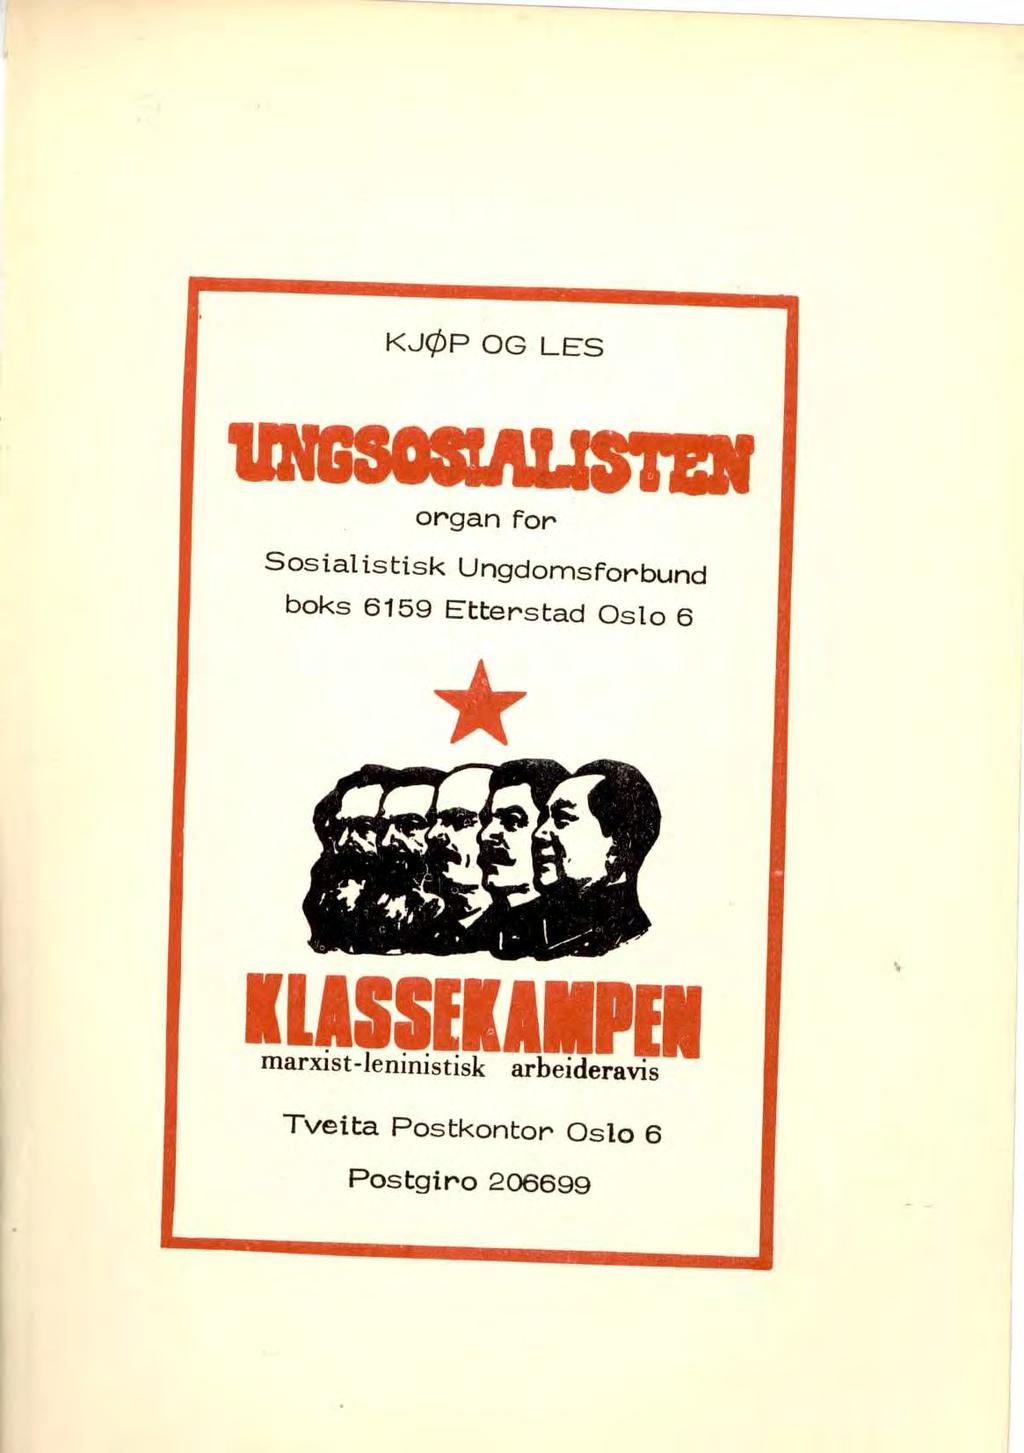 KJØP OG LES organ for Sosialistisk Ungdomsforbund boks 6159 Etterstad Oslo 6